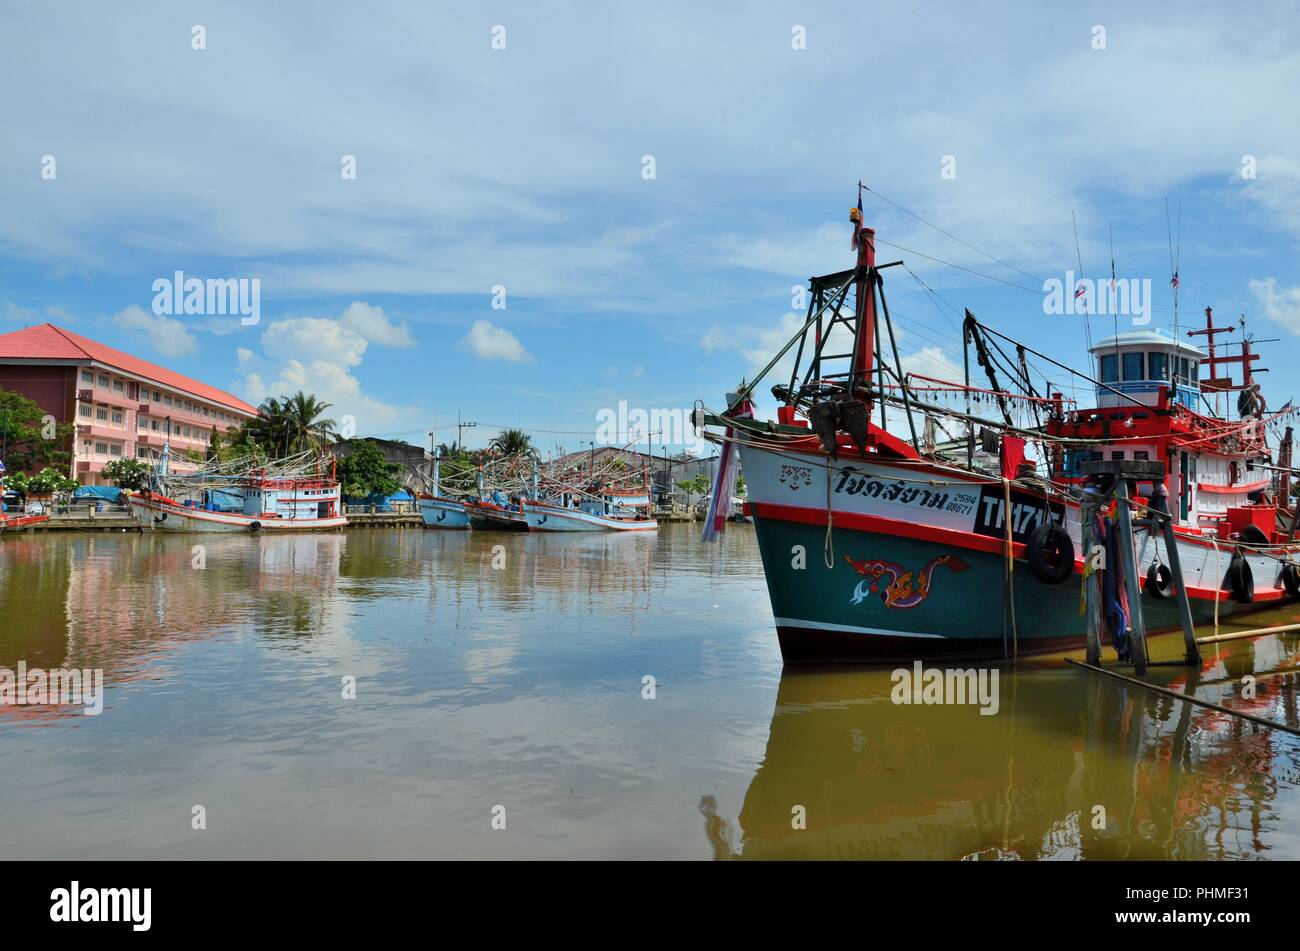 Bateaux de pêche amarré au port de poisson Thaïlande Pattani Banque D'Images